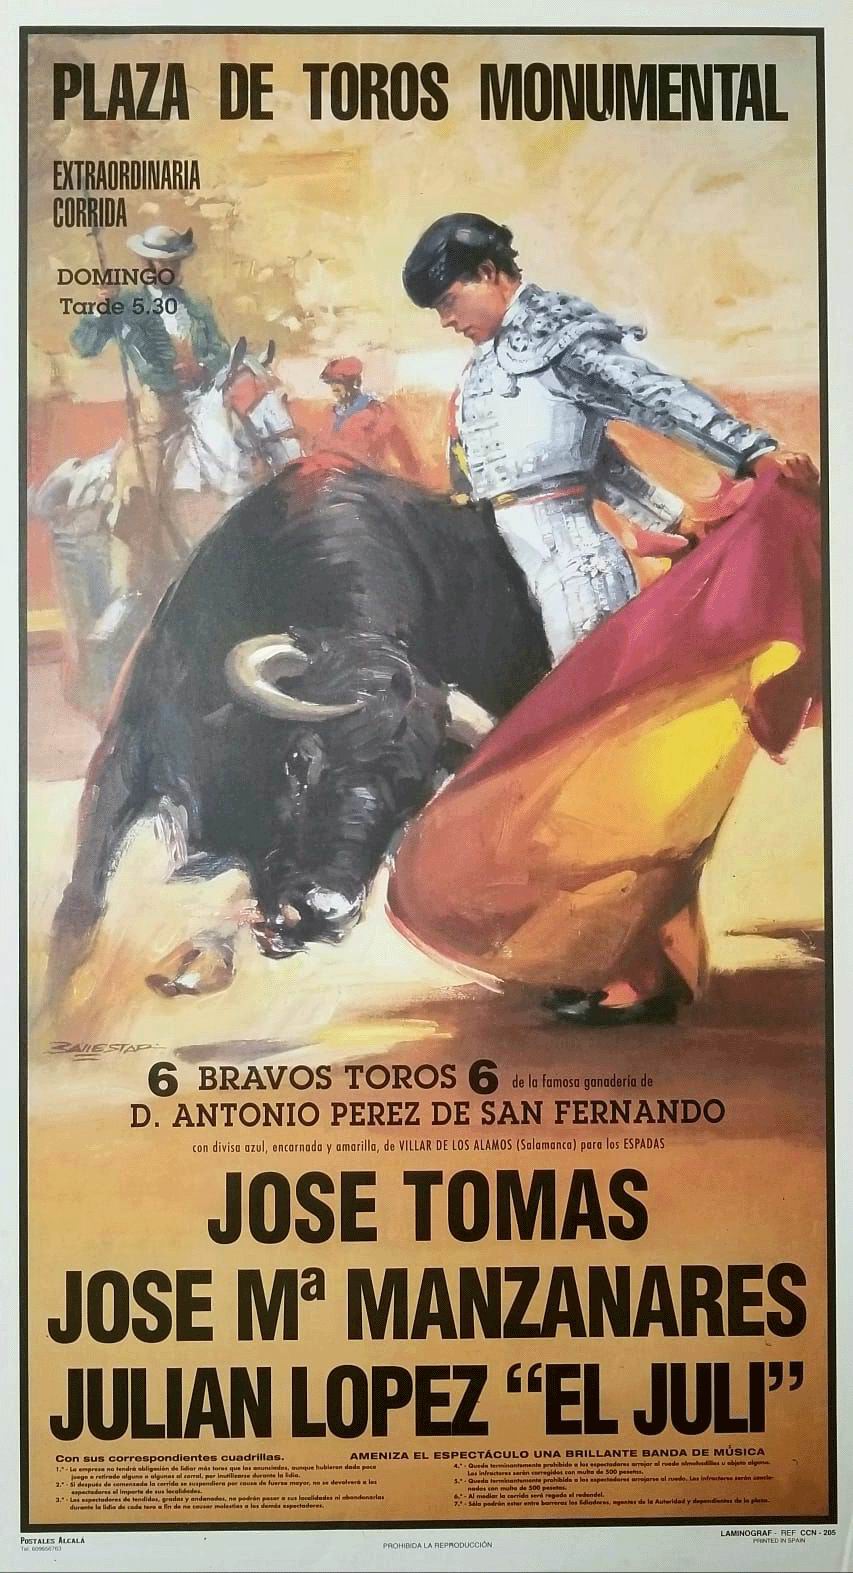 闘牛ポスター. 闘牛士: José Tomás, José Mª Manzanares, Julian López 